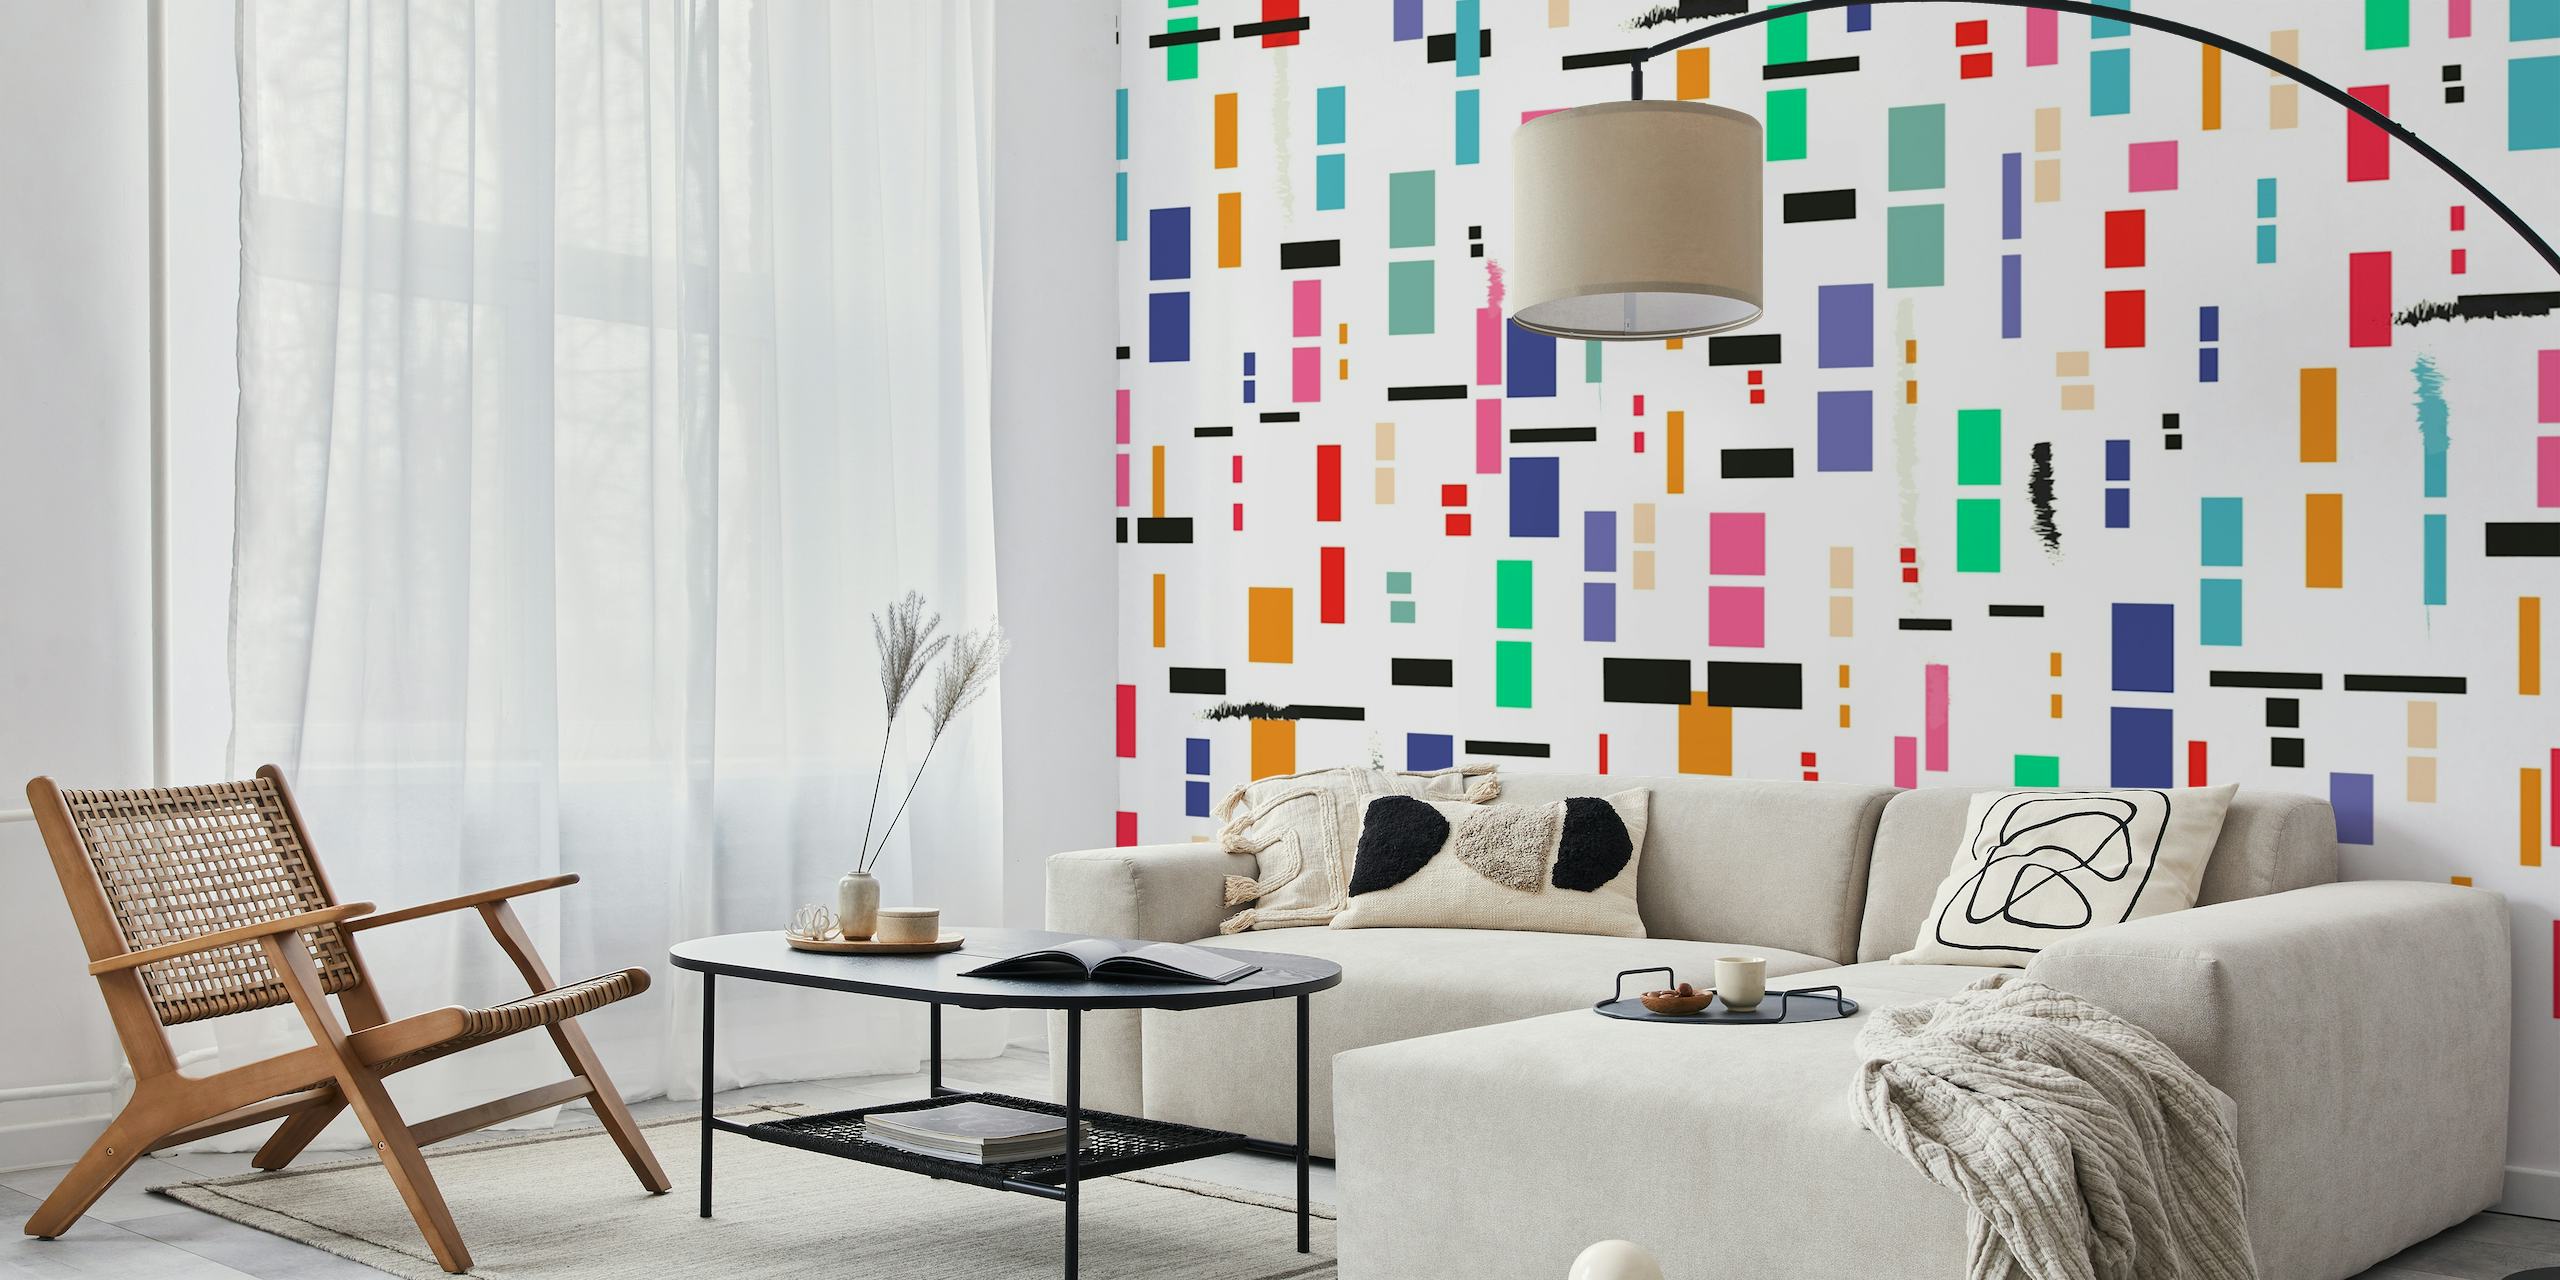 Abstrakt farveblok vægmaleri med diverse rektangulære former i en række forskellige farver